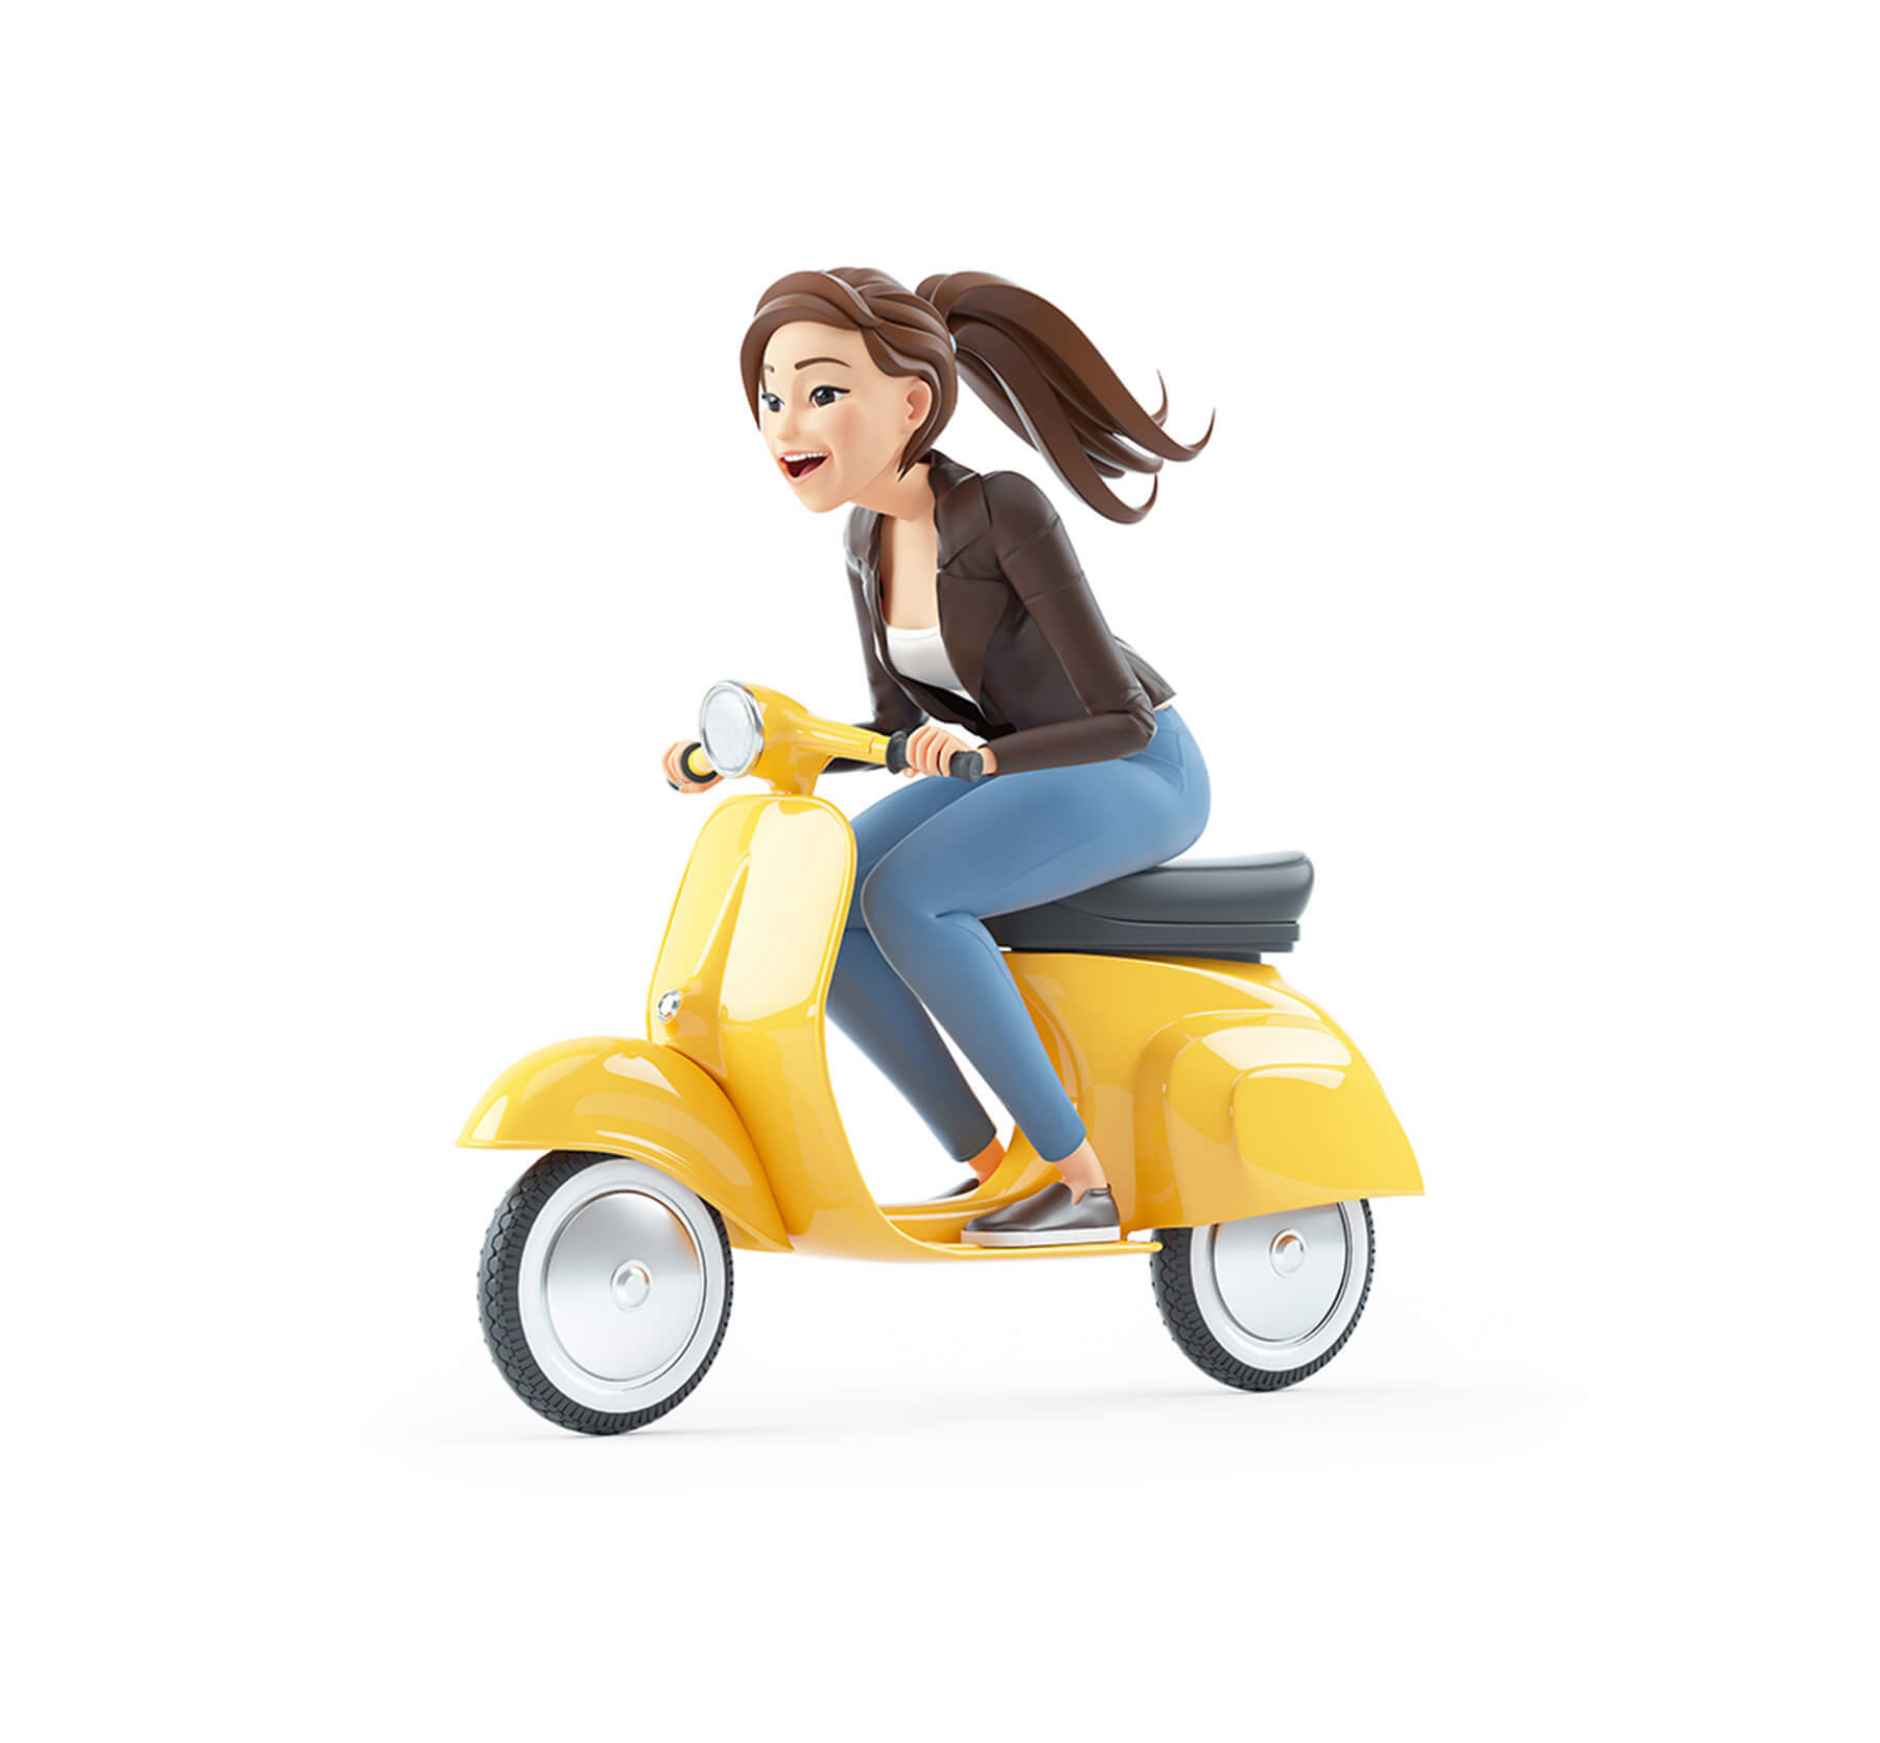 Frau auf Moped